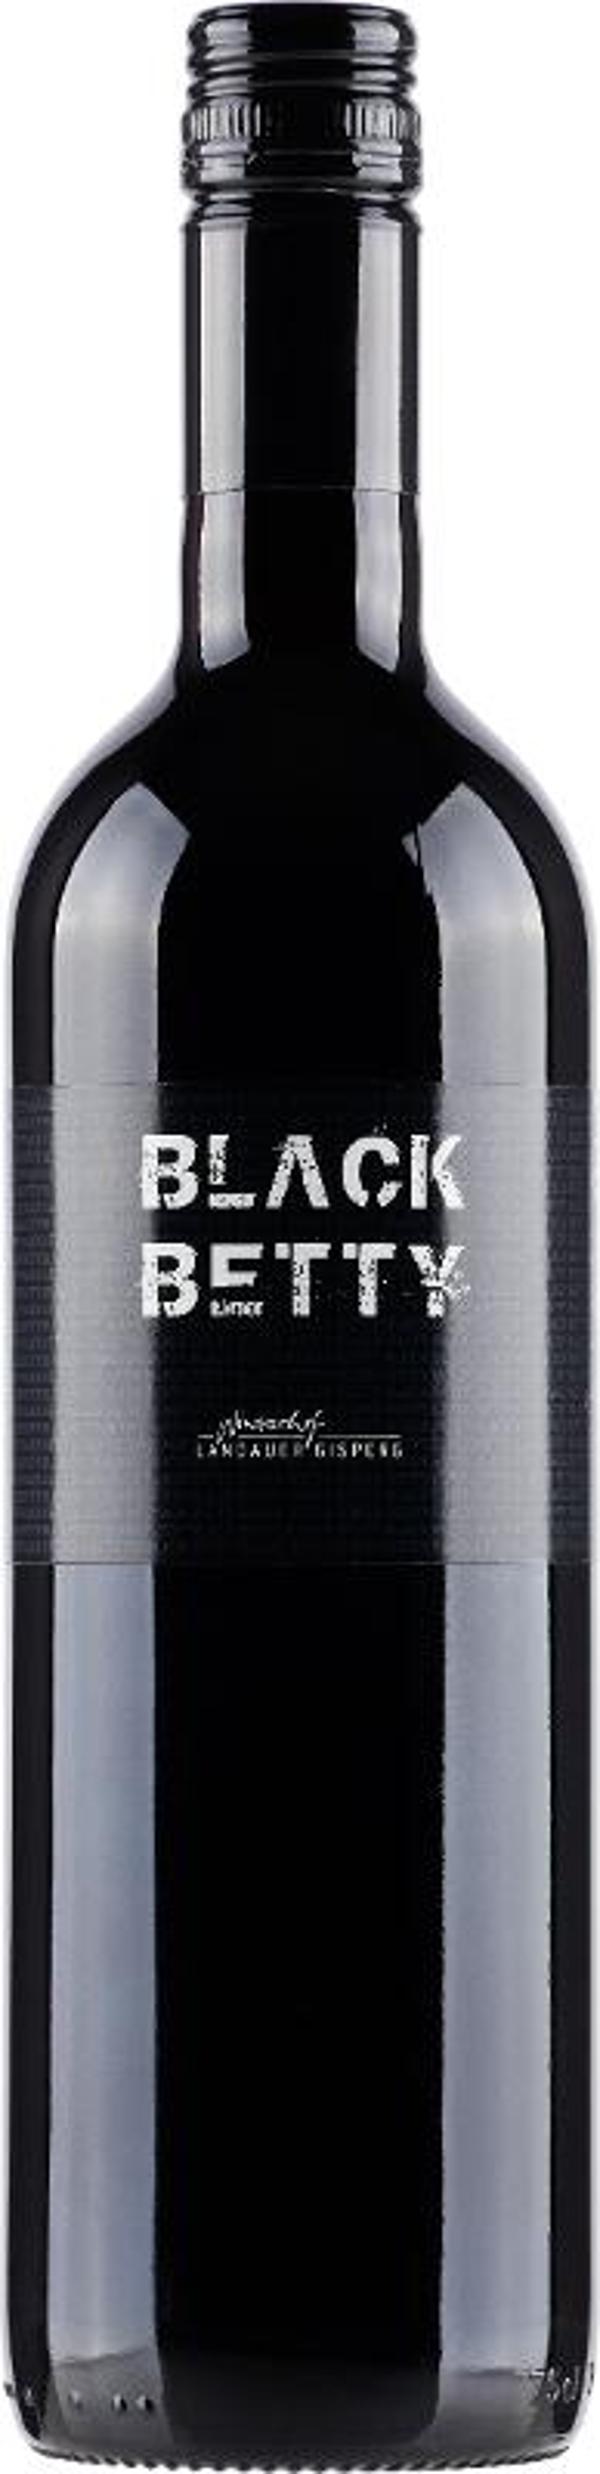 Produktfoto zu Black Betty rot trocken, 0,75 l